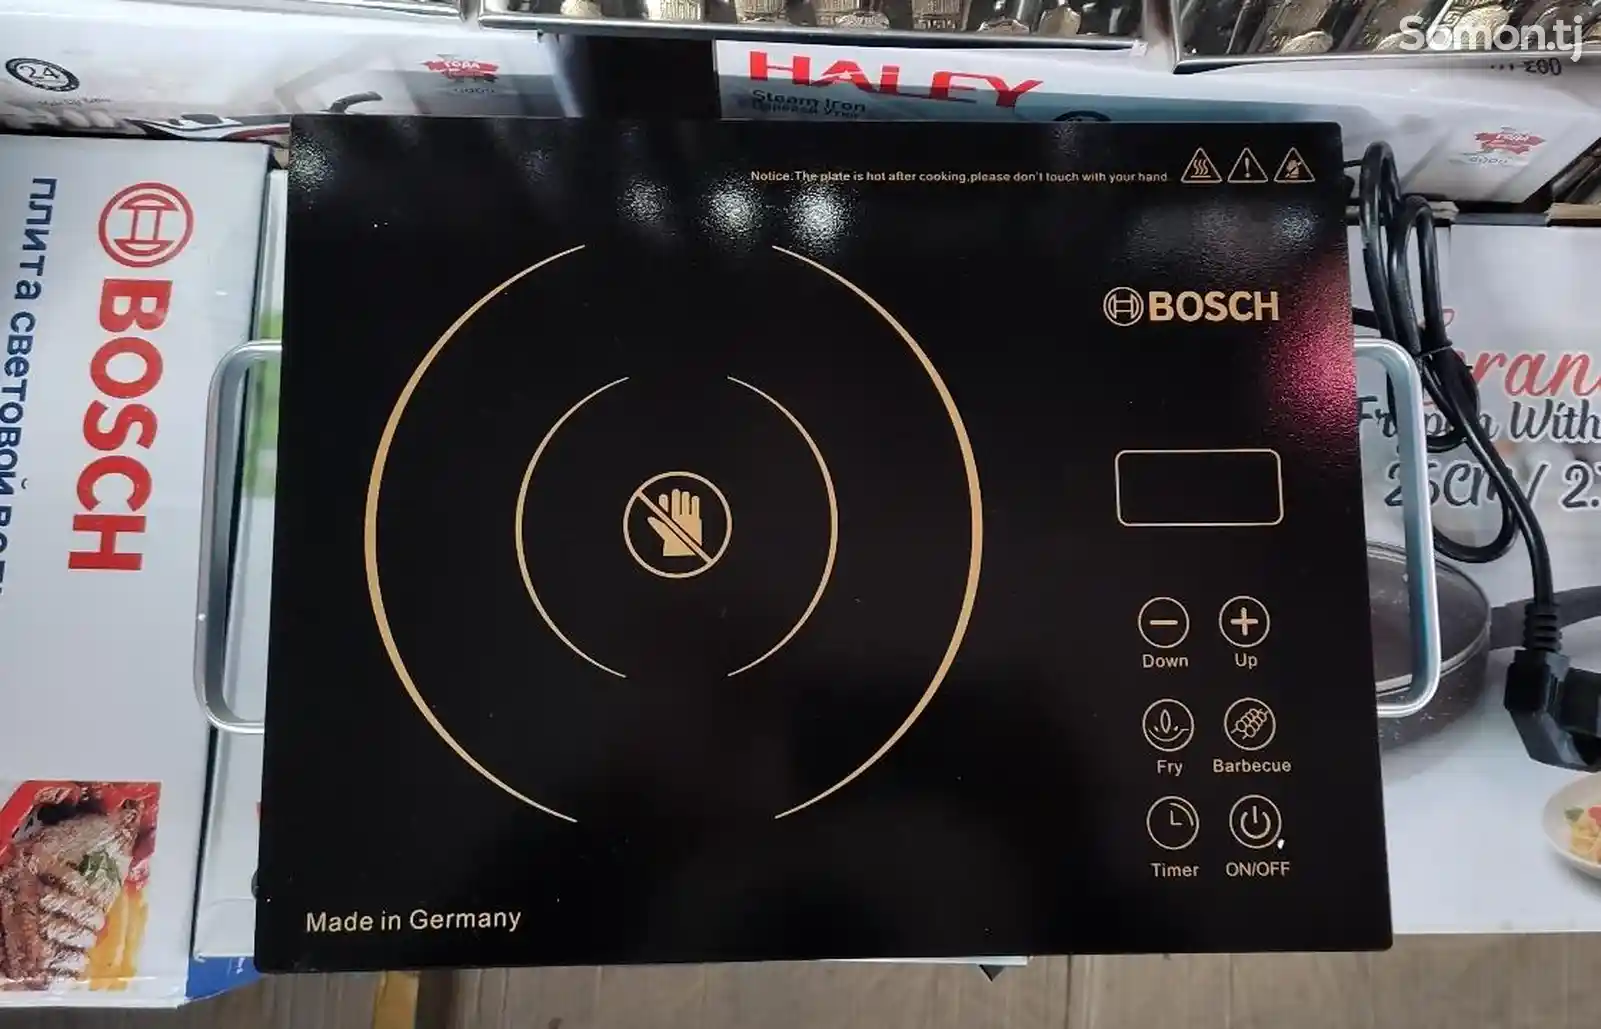 Сенсорная плита Bosch